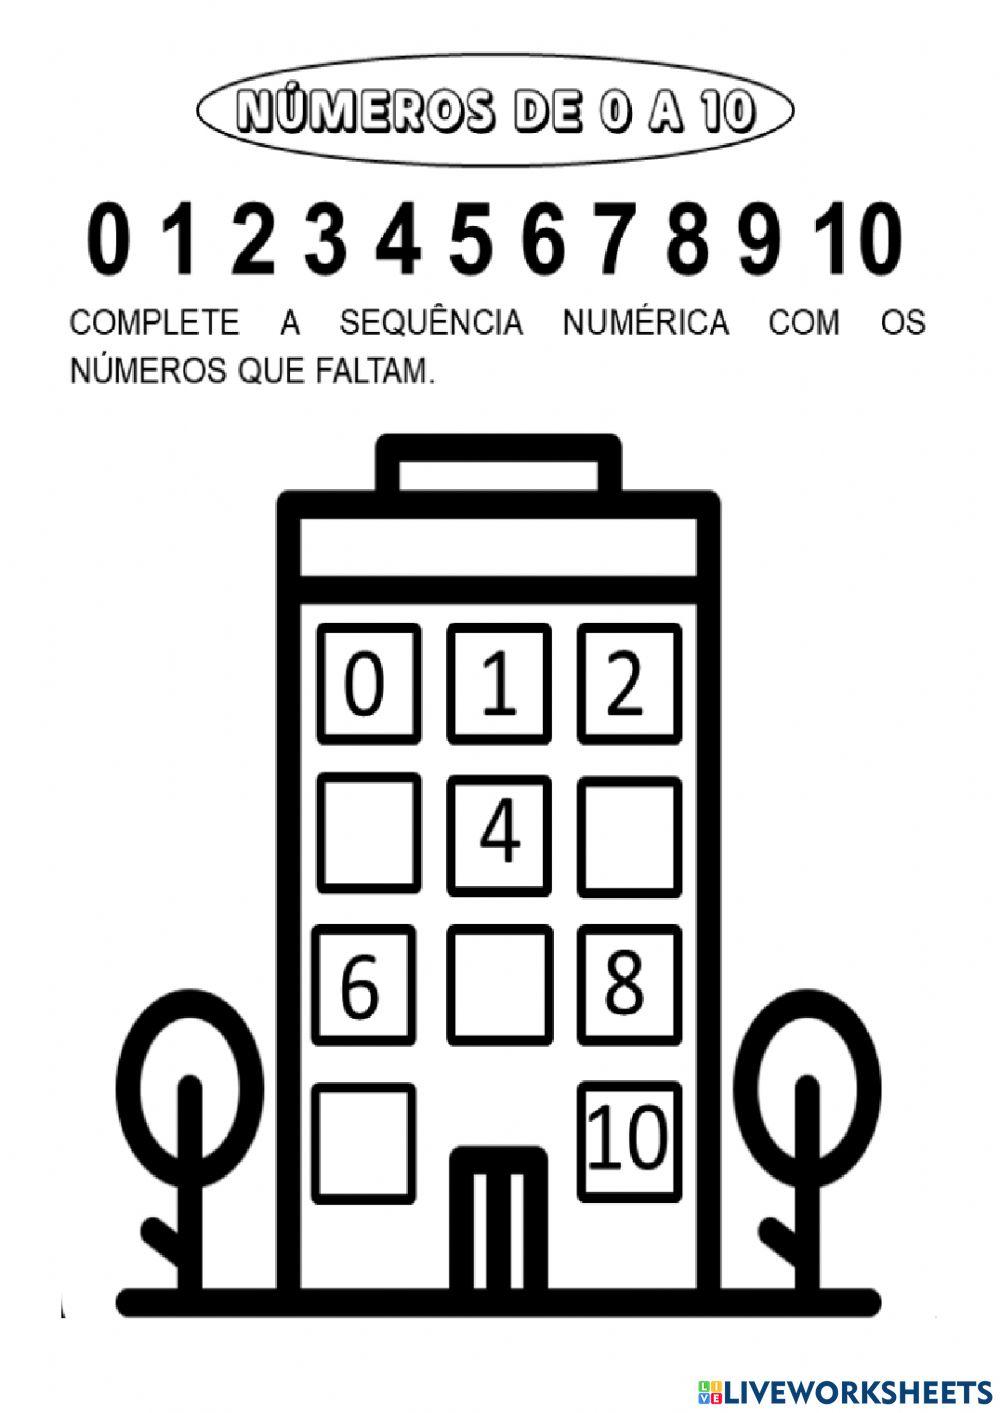 Complete a sequência numérica com os números que faltam.